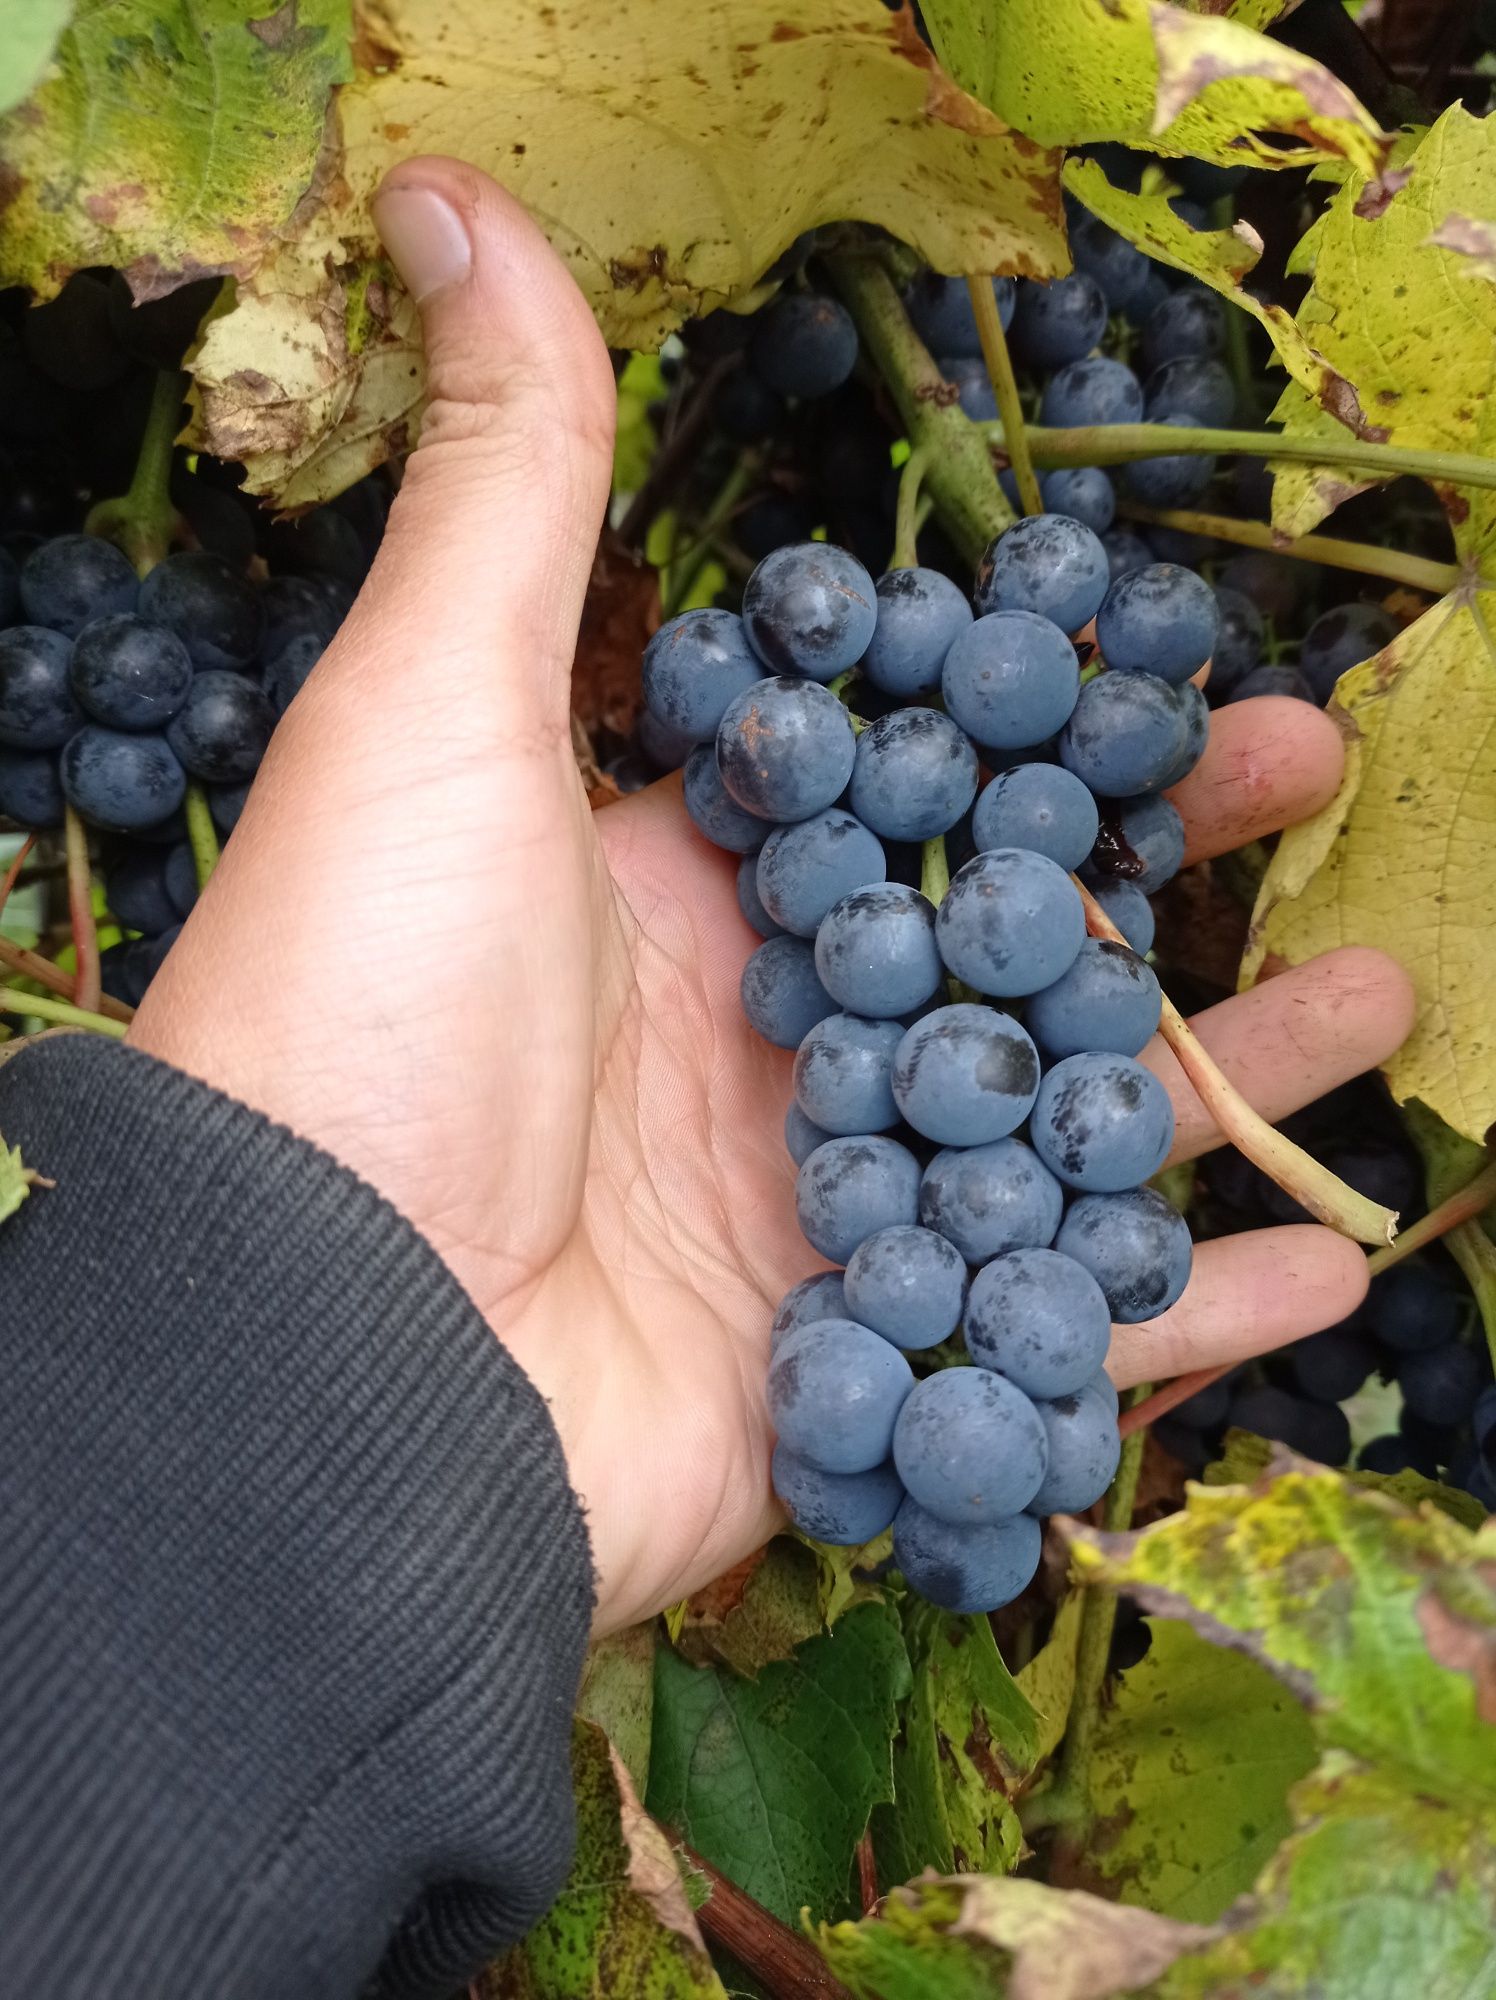 Sadzonki winogrona